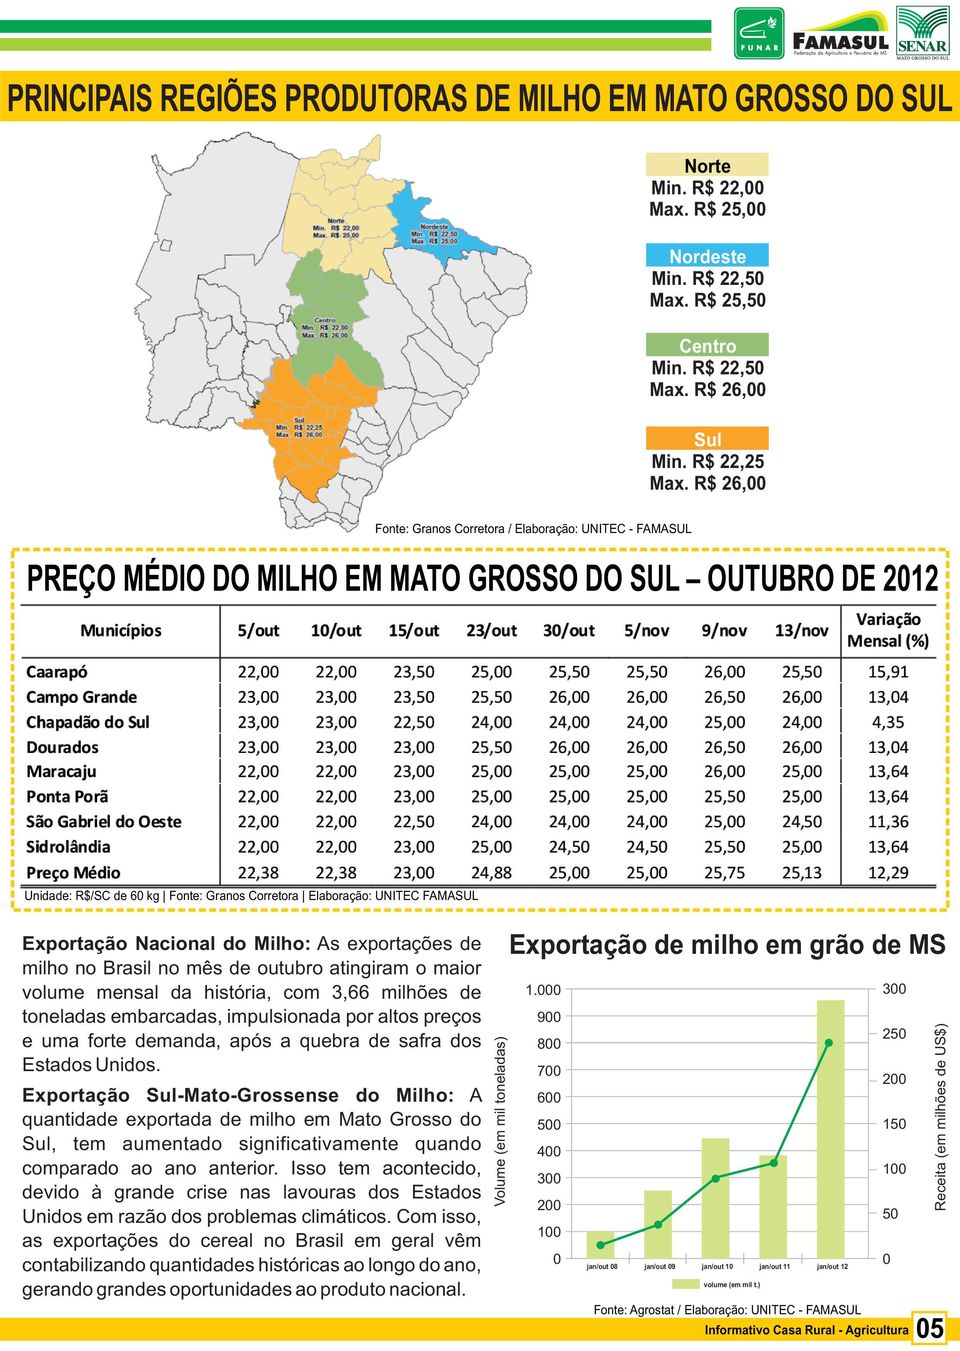 9 25 8 7 2 6 15 5 4 1 3 2 5 Receita (em milhões de US$) Exportação Sul-Mato-Grossense do Milho: A quantidade exportada de milho em Mato Grosso do Sul, tem aumentado significativamente quando